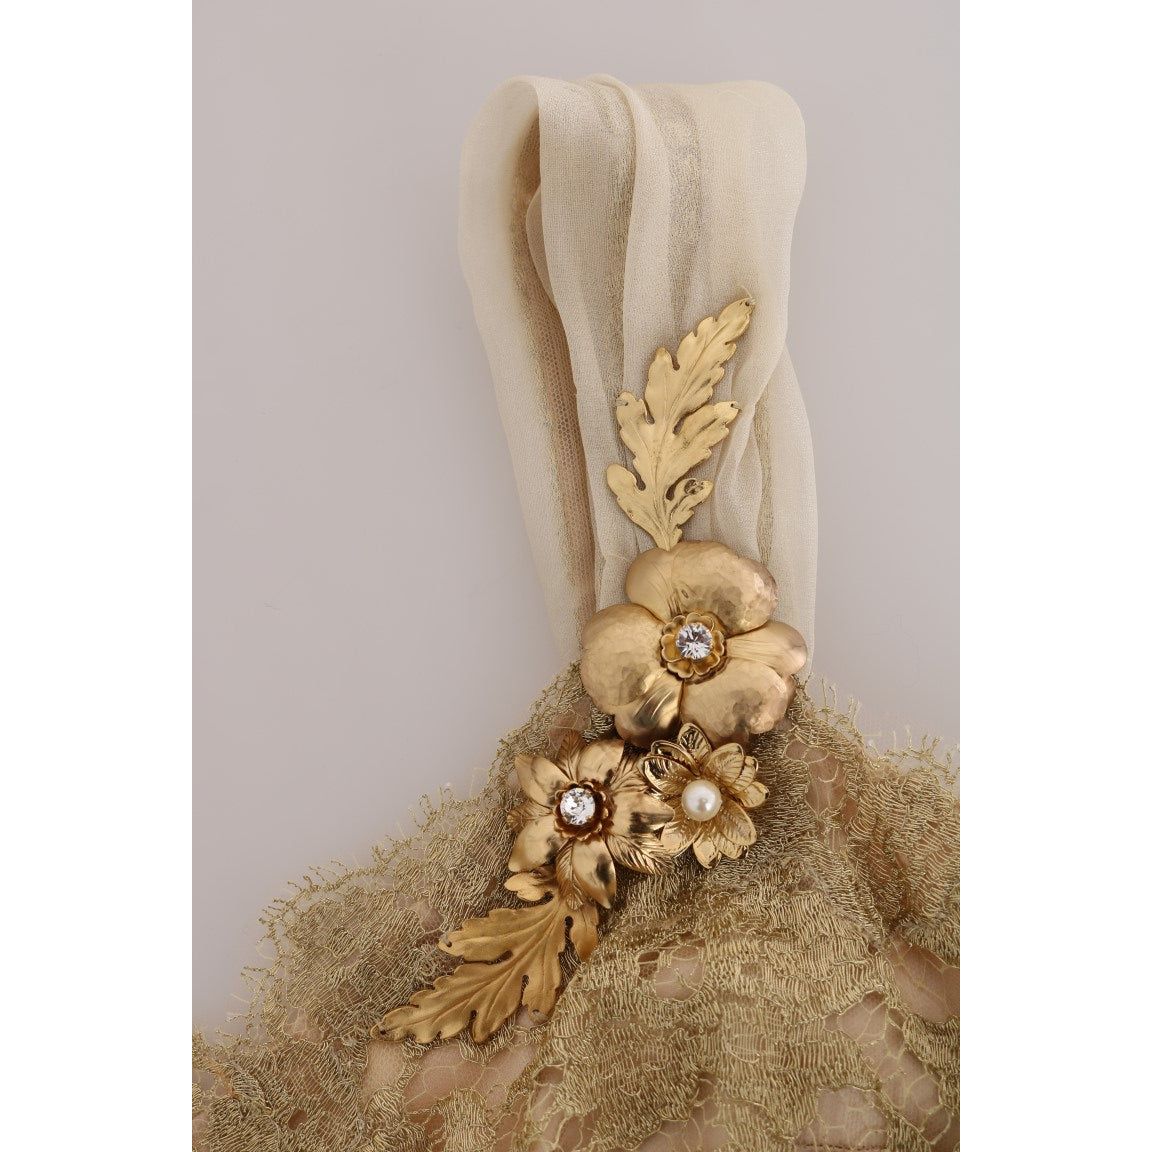 Dolce & Gabbana Elegant Embellished Lace & Organza Silk Dress gold-silk-crystal-embellished-dress